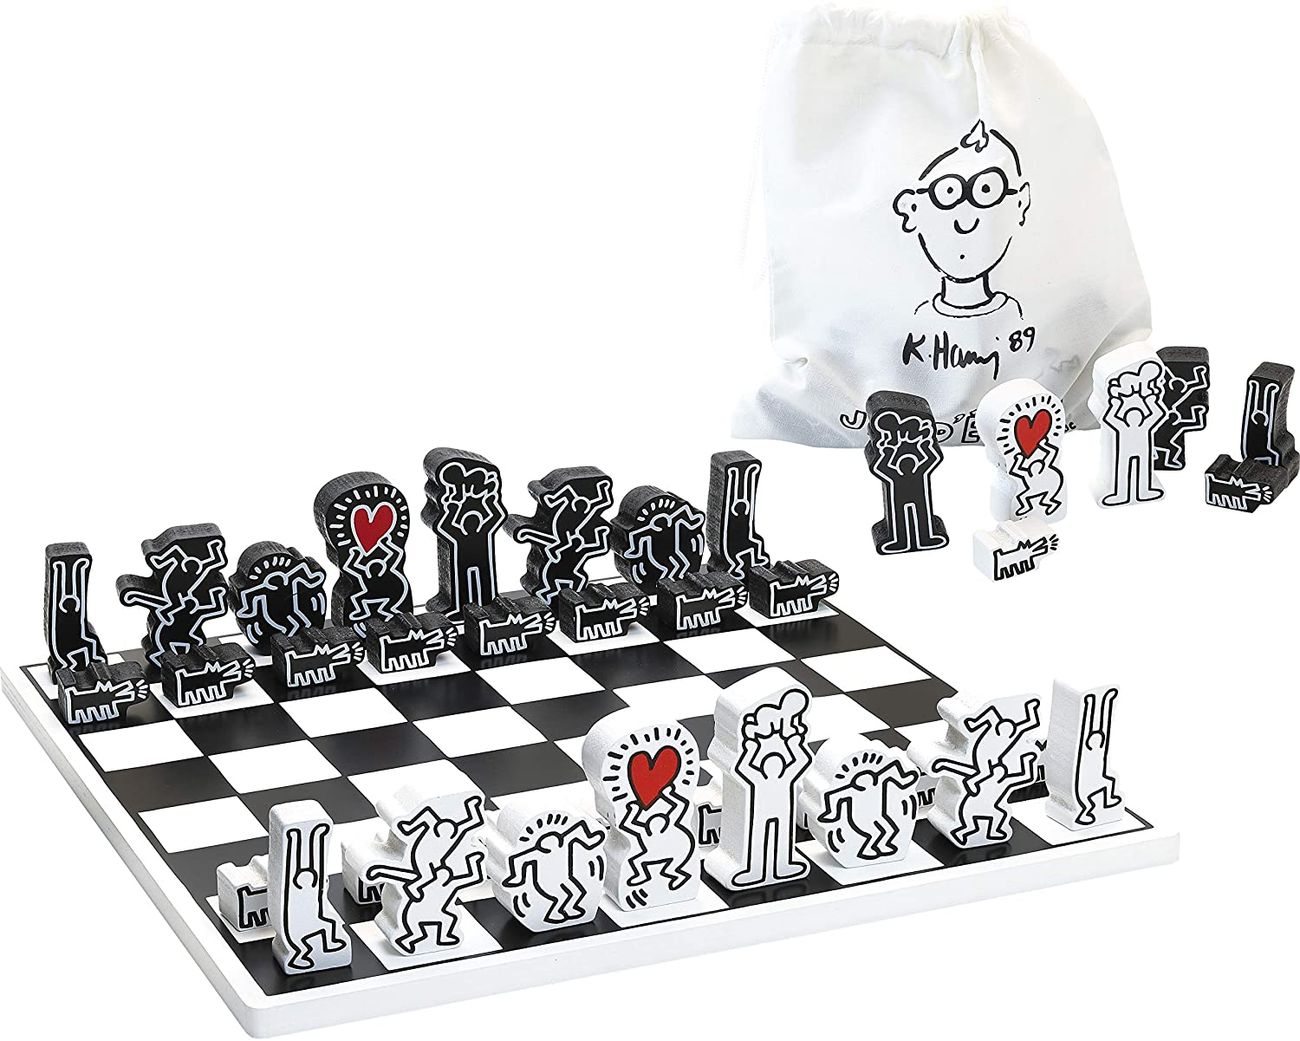 La scacchiera Keith Haring